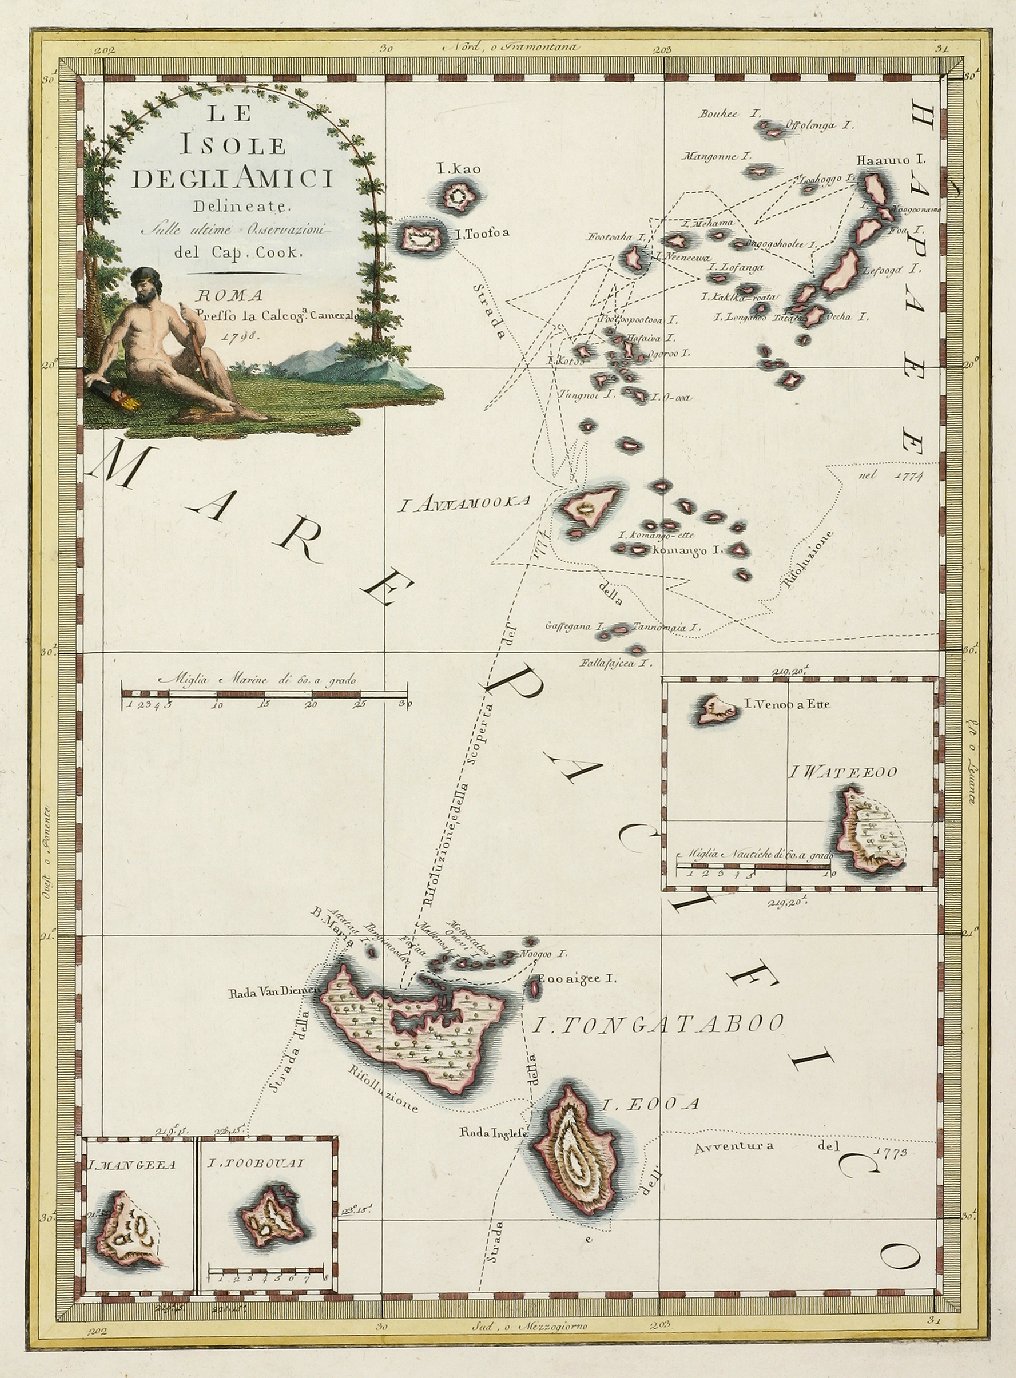 Le Isole Degli Amici Sulle Ultime Osservazionni del Cap. Cook. - Antique Map from 1798